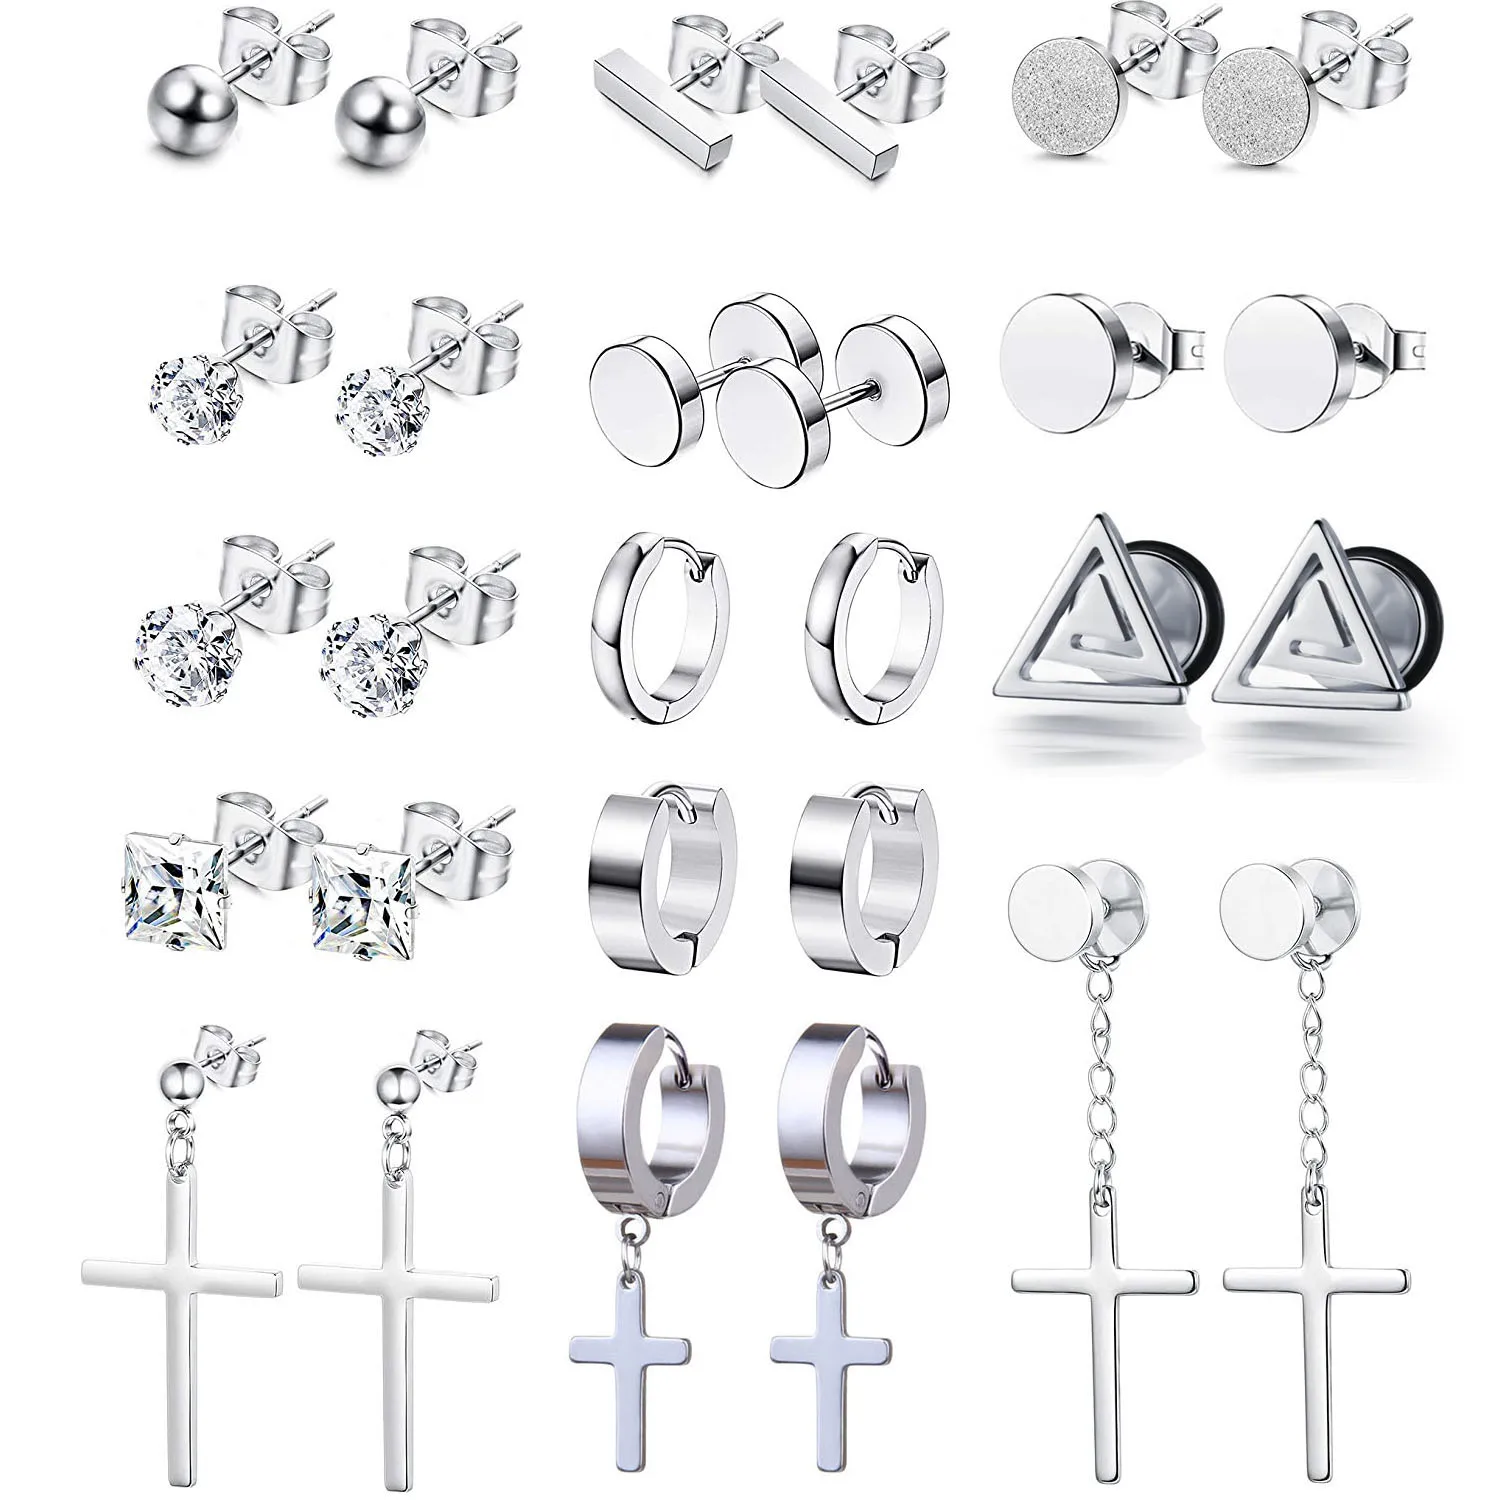 

1-14 Pairs Stainless Steel Dangle Hinged Cross Stud Earrings Hoop Huggie Earrings Ear Piercing Jewelry for Men Women Silver Tone